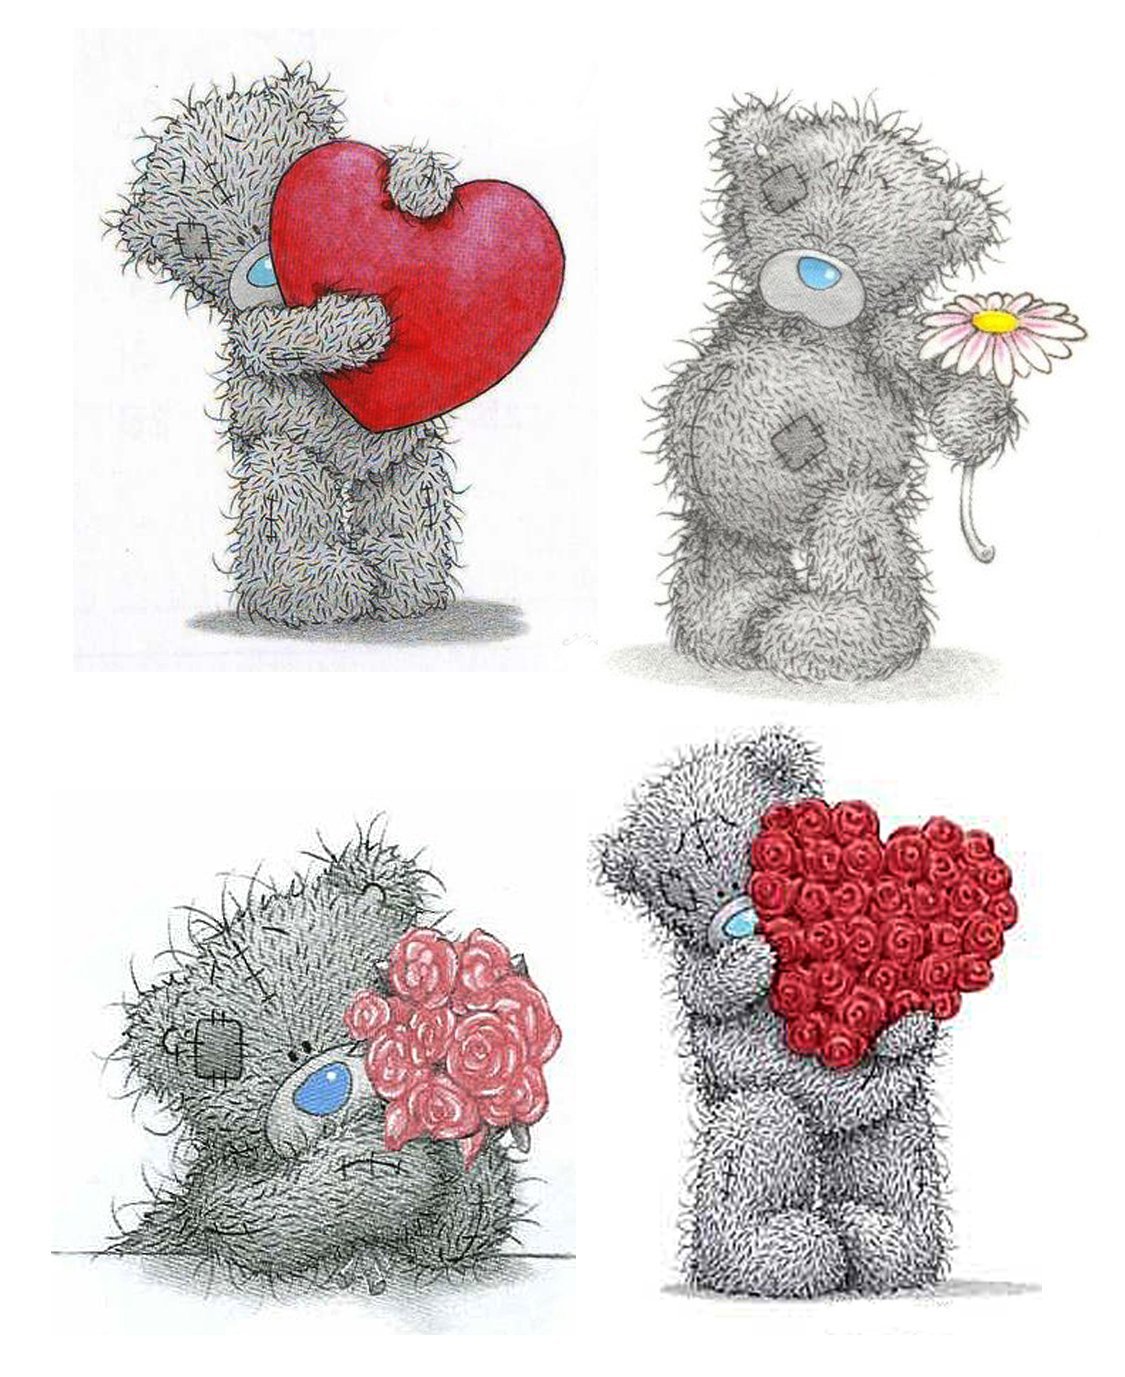 Сердце сестренке. Мишка Тедди картинки. Мишка Тедди рисунок. Картинки медвежонка Теди. Мишка Тедди с сердцем.